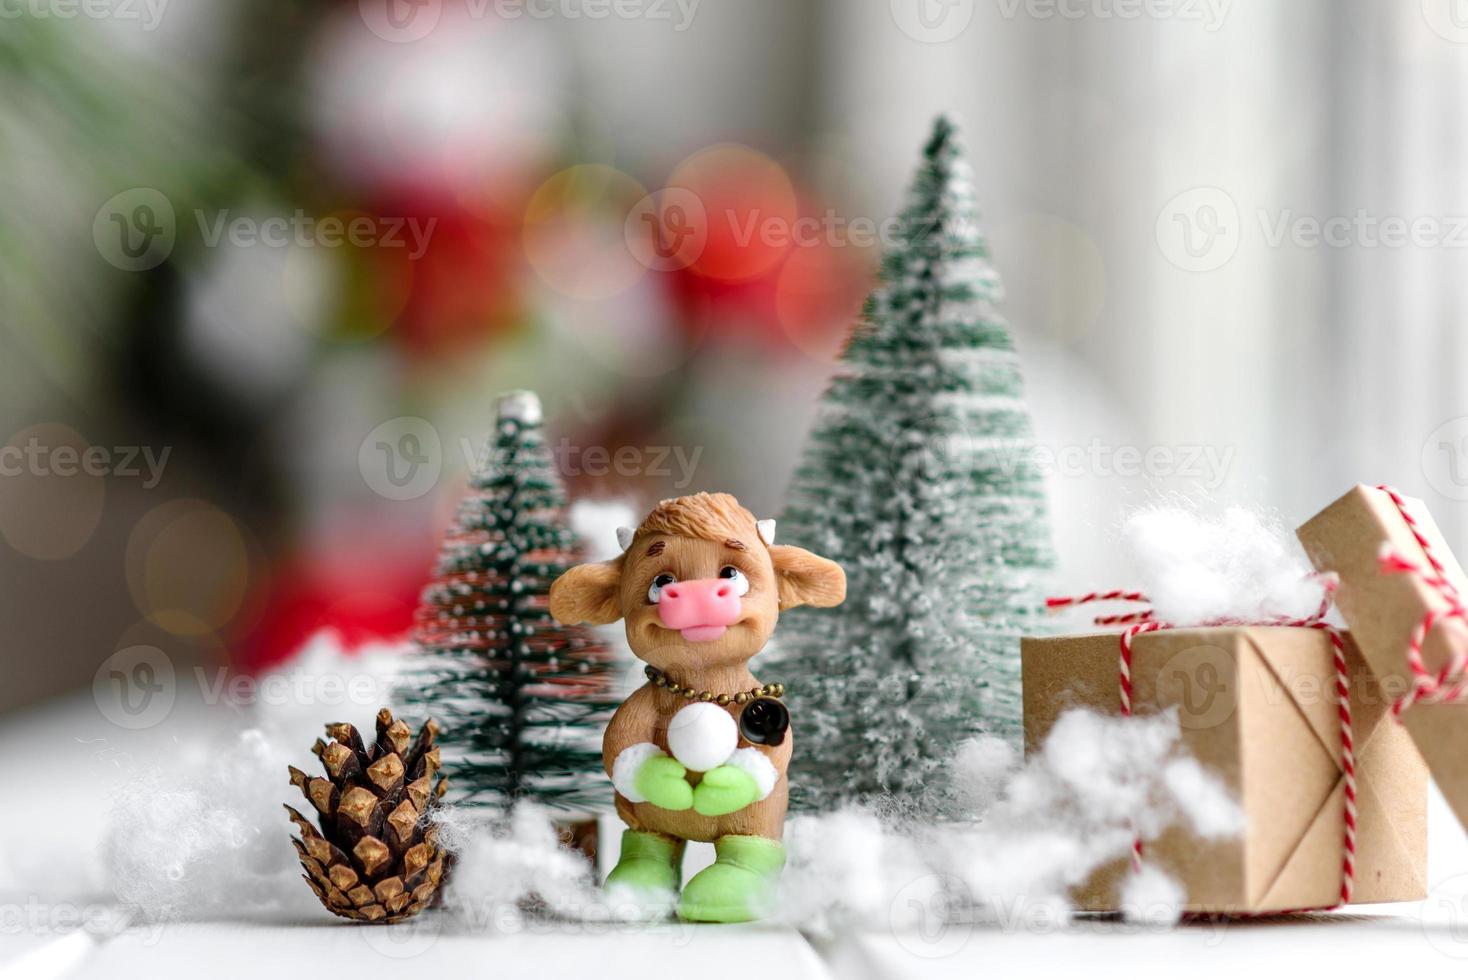 lindas decorações de natal multicoloridas em uma mesa de madeira clara foto